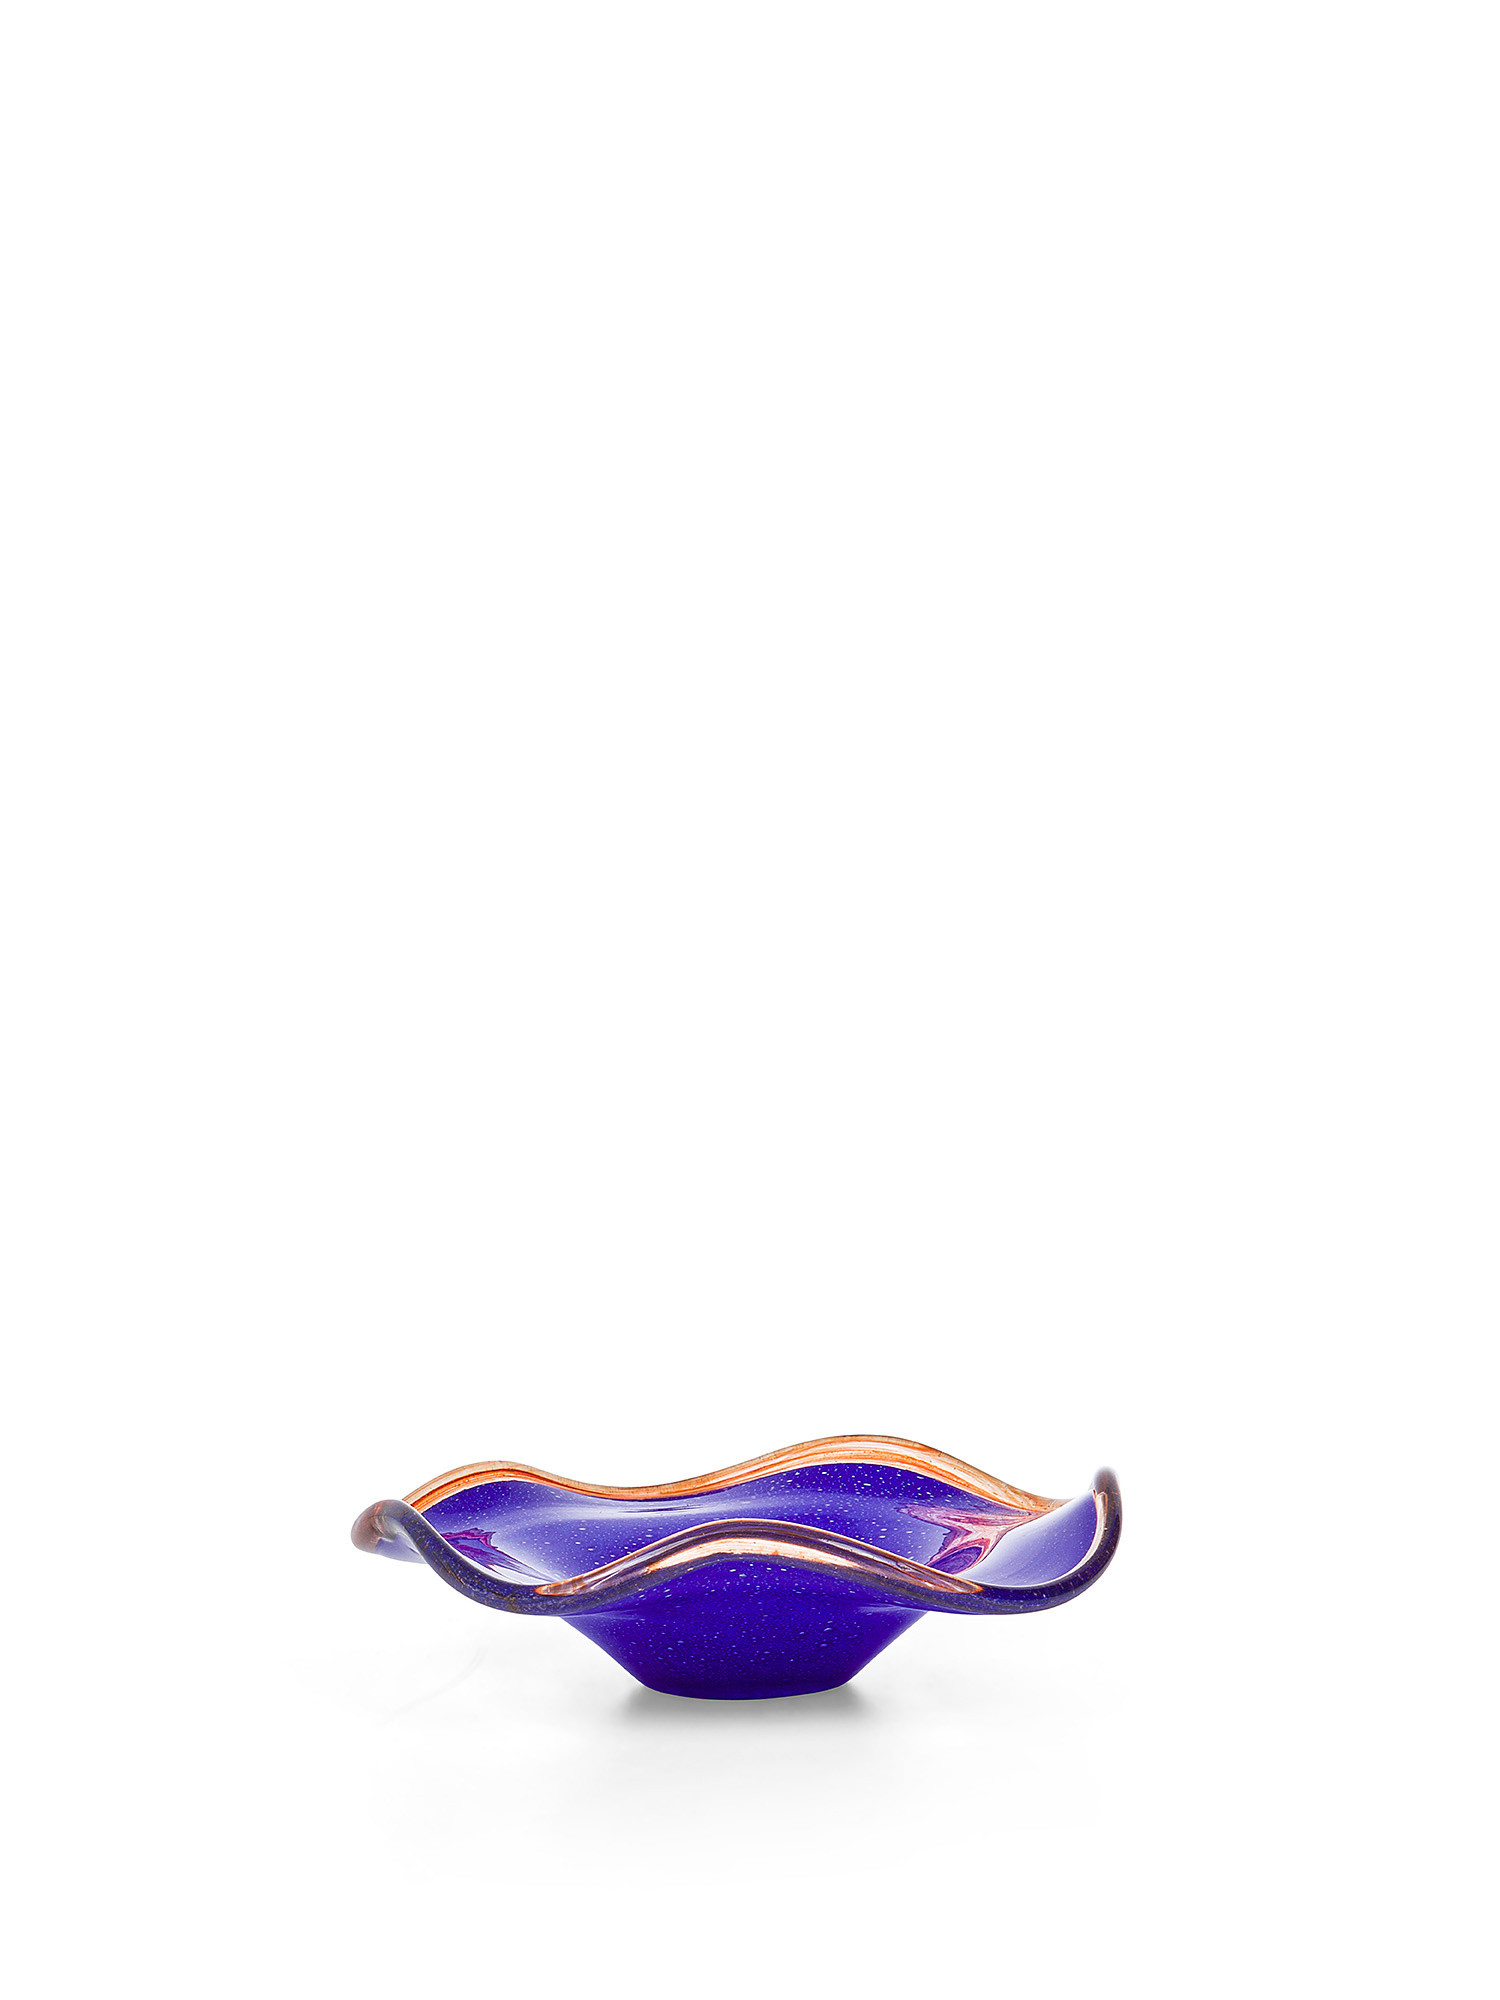 Piatto decorativo in vetro colorato in pasta con bordo a contrasto, Blu, large image number 0